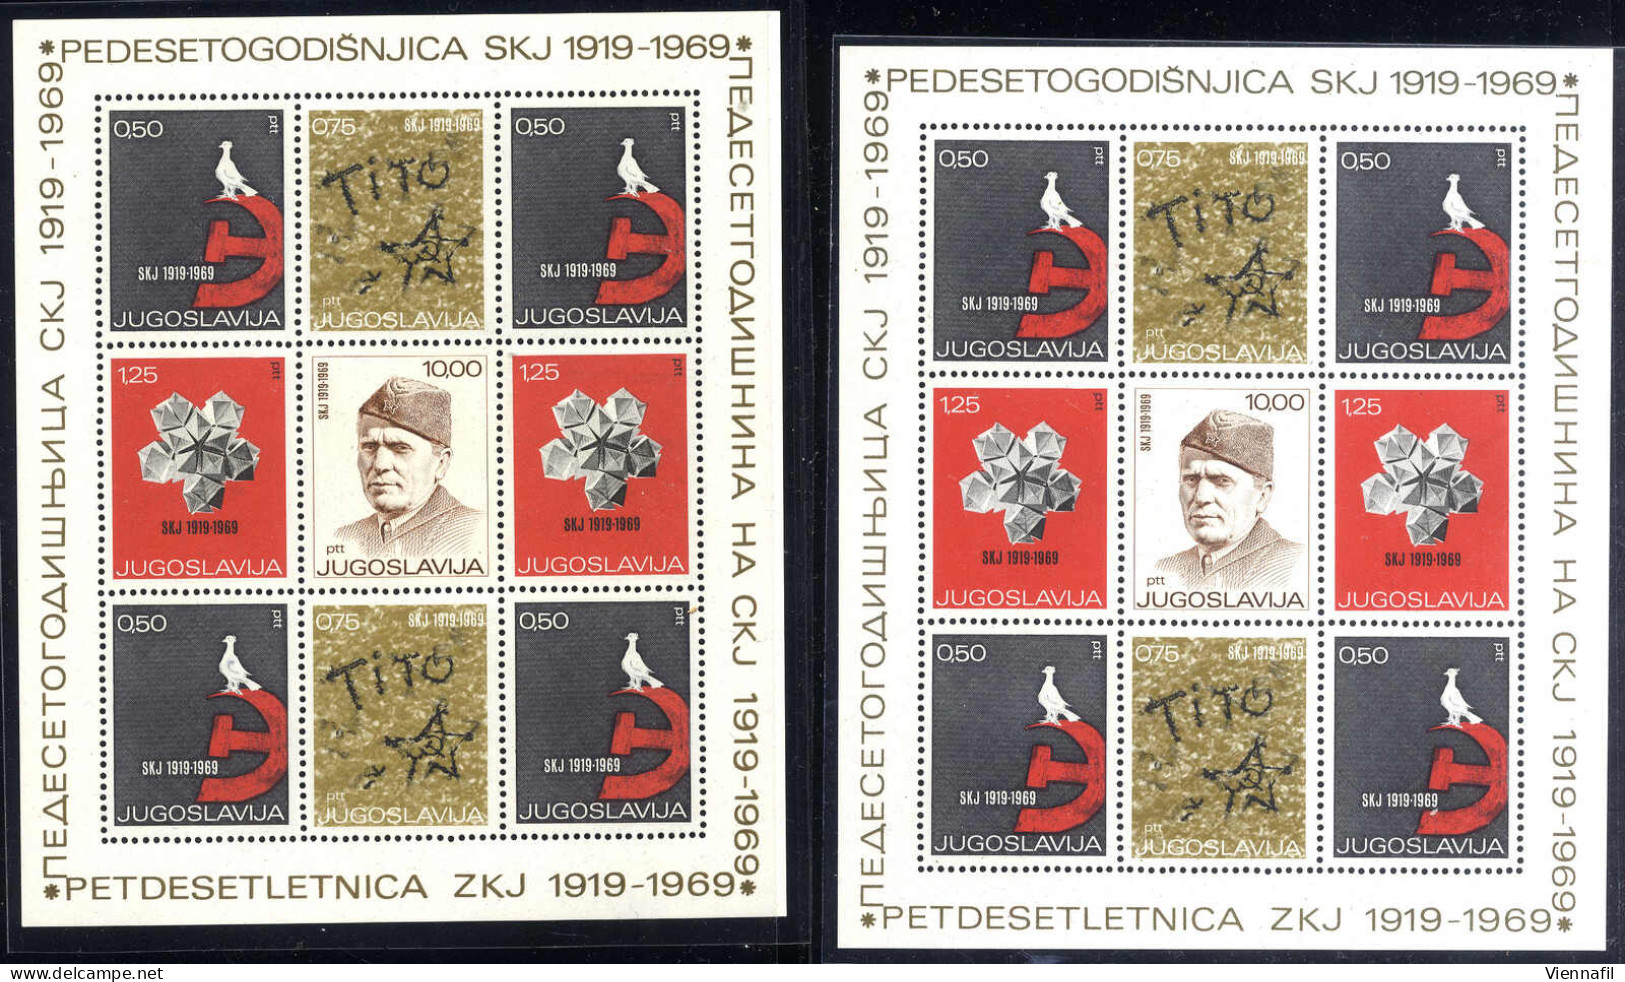 **/*/o Jugoslawien 1921/89, meist ungebrauchte und ein wenig gestempelte Sammlung auf Einsteckblättern, dabei auch Reich